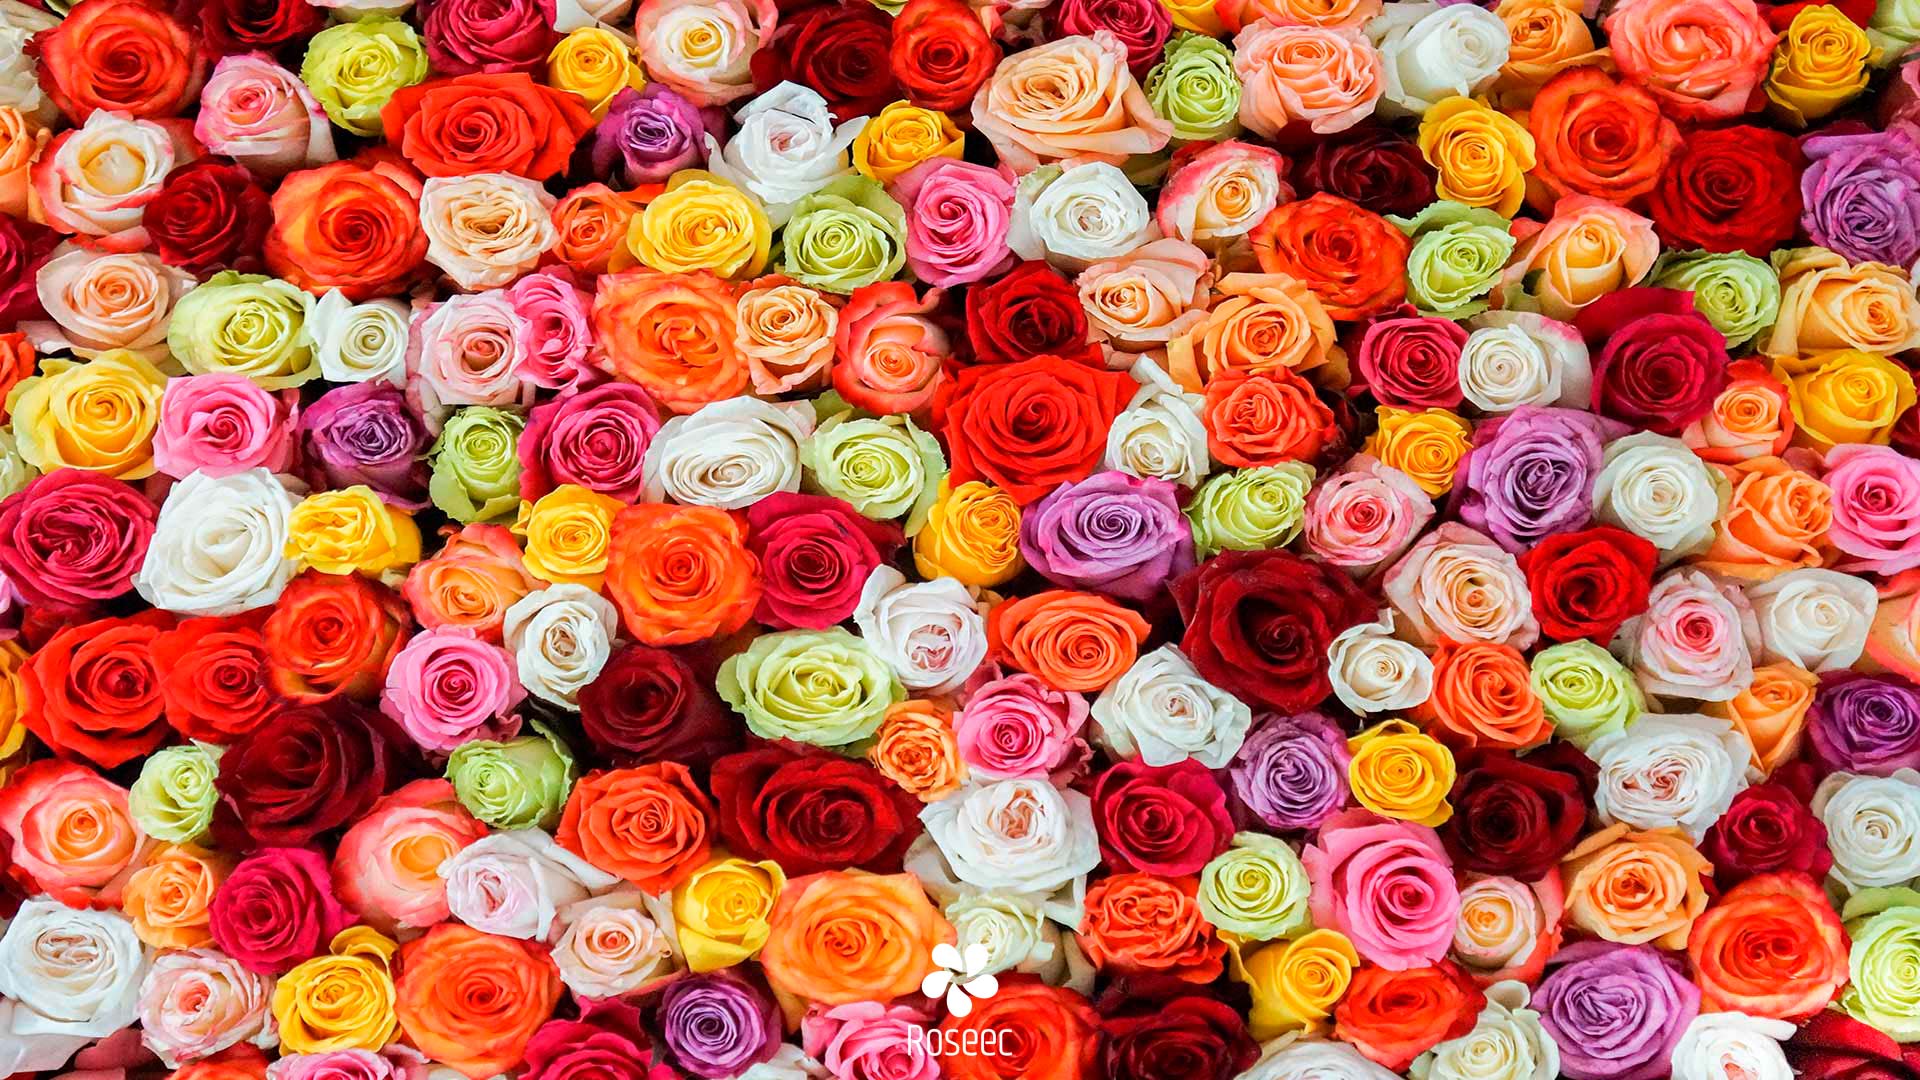 Roseec – Exporter of Premium Ecuadorian Flowers